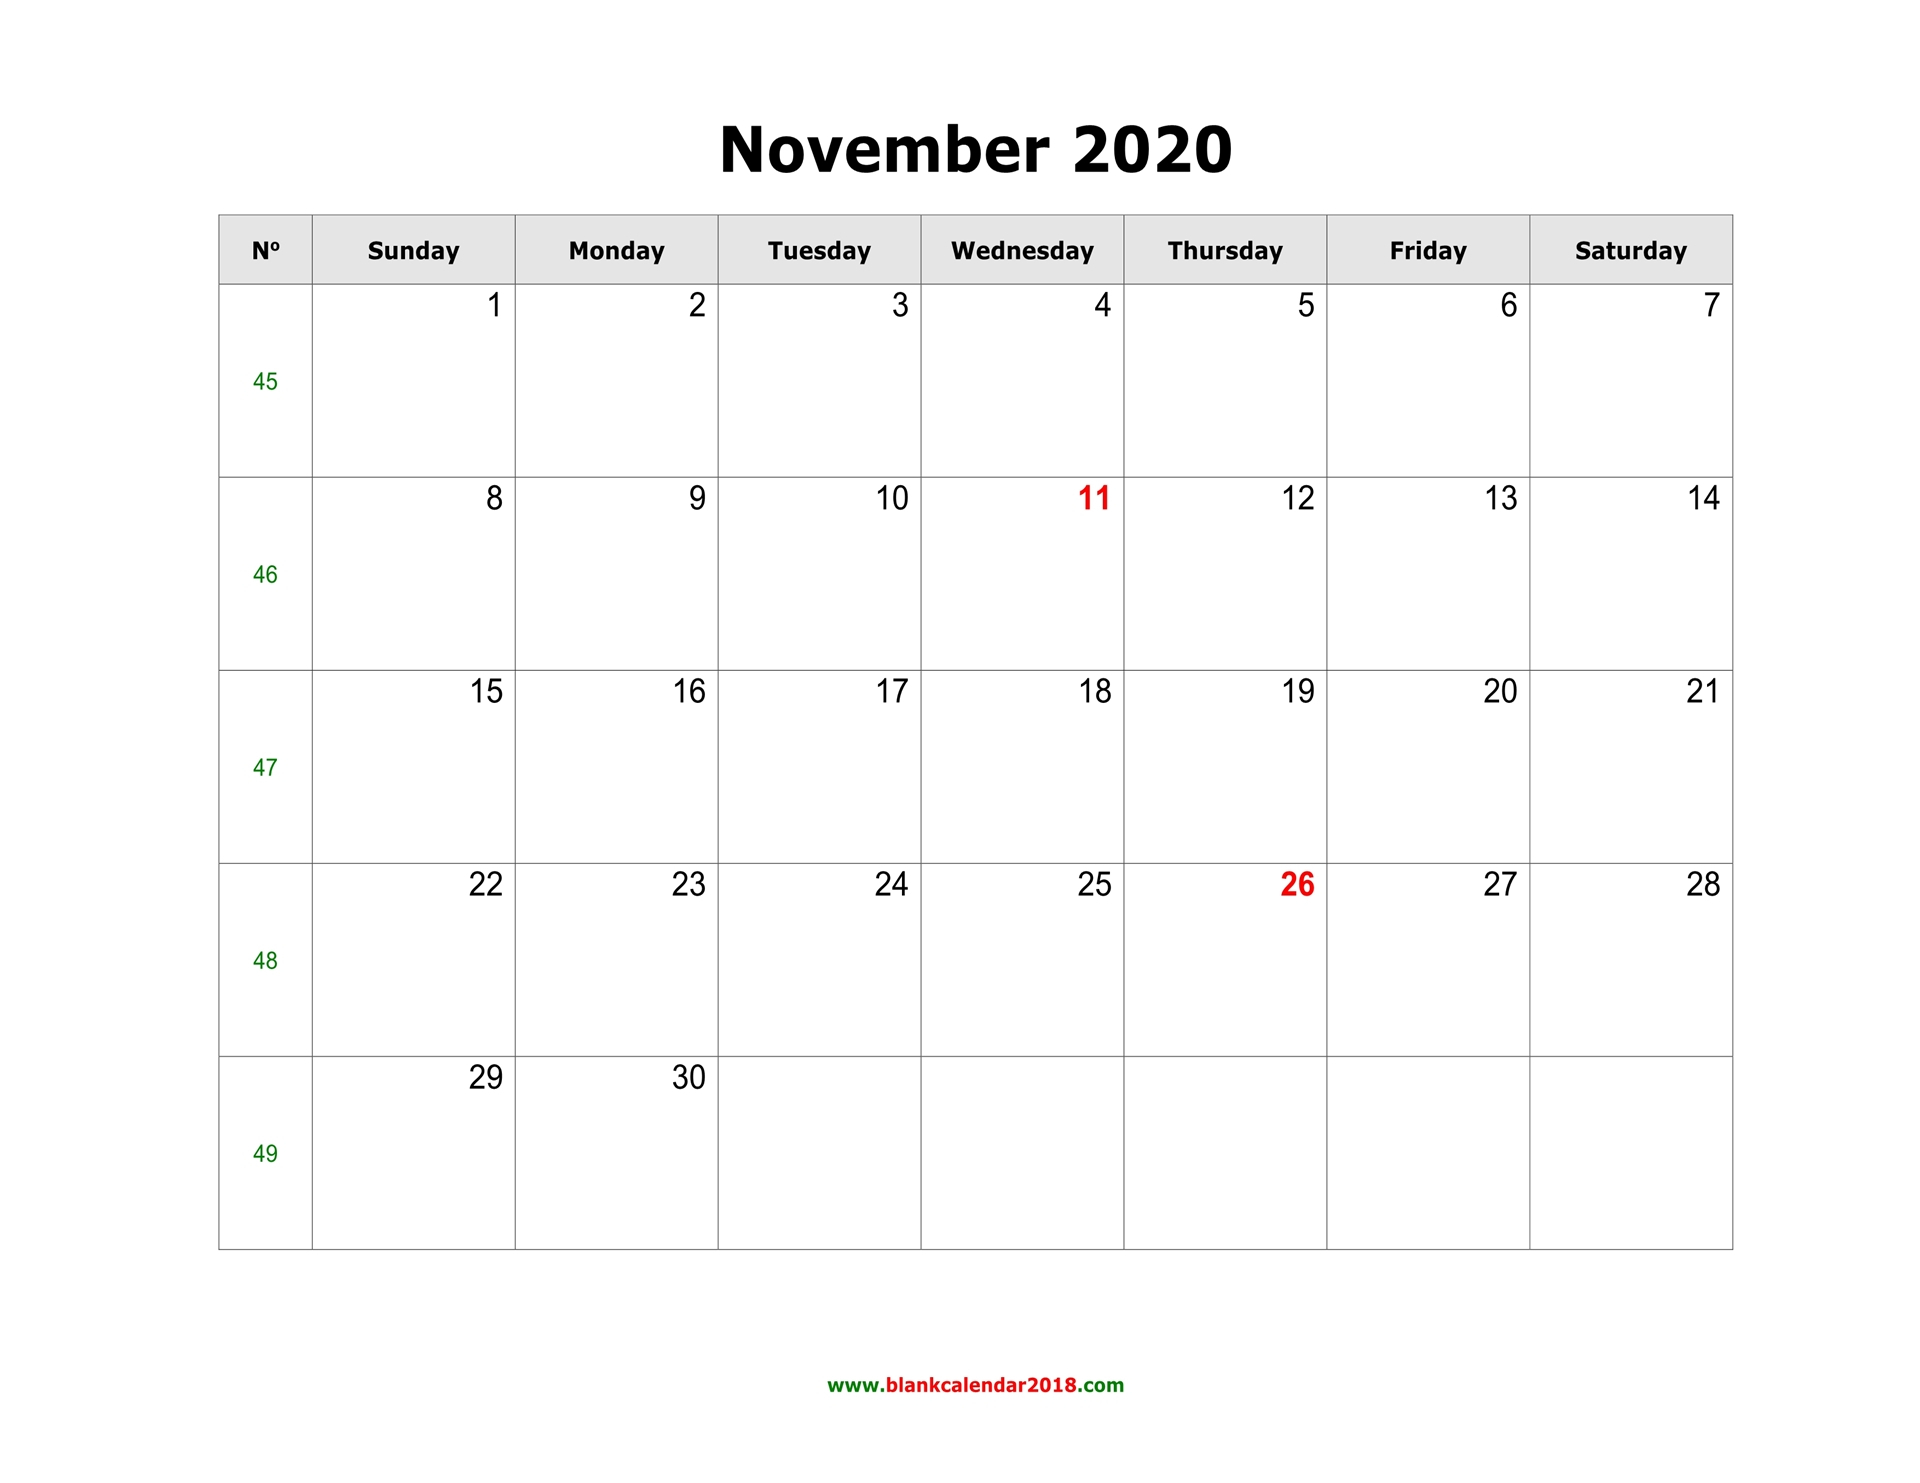 Blank Calendar For November 2020